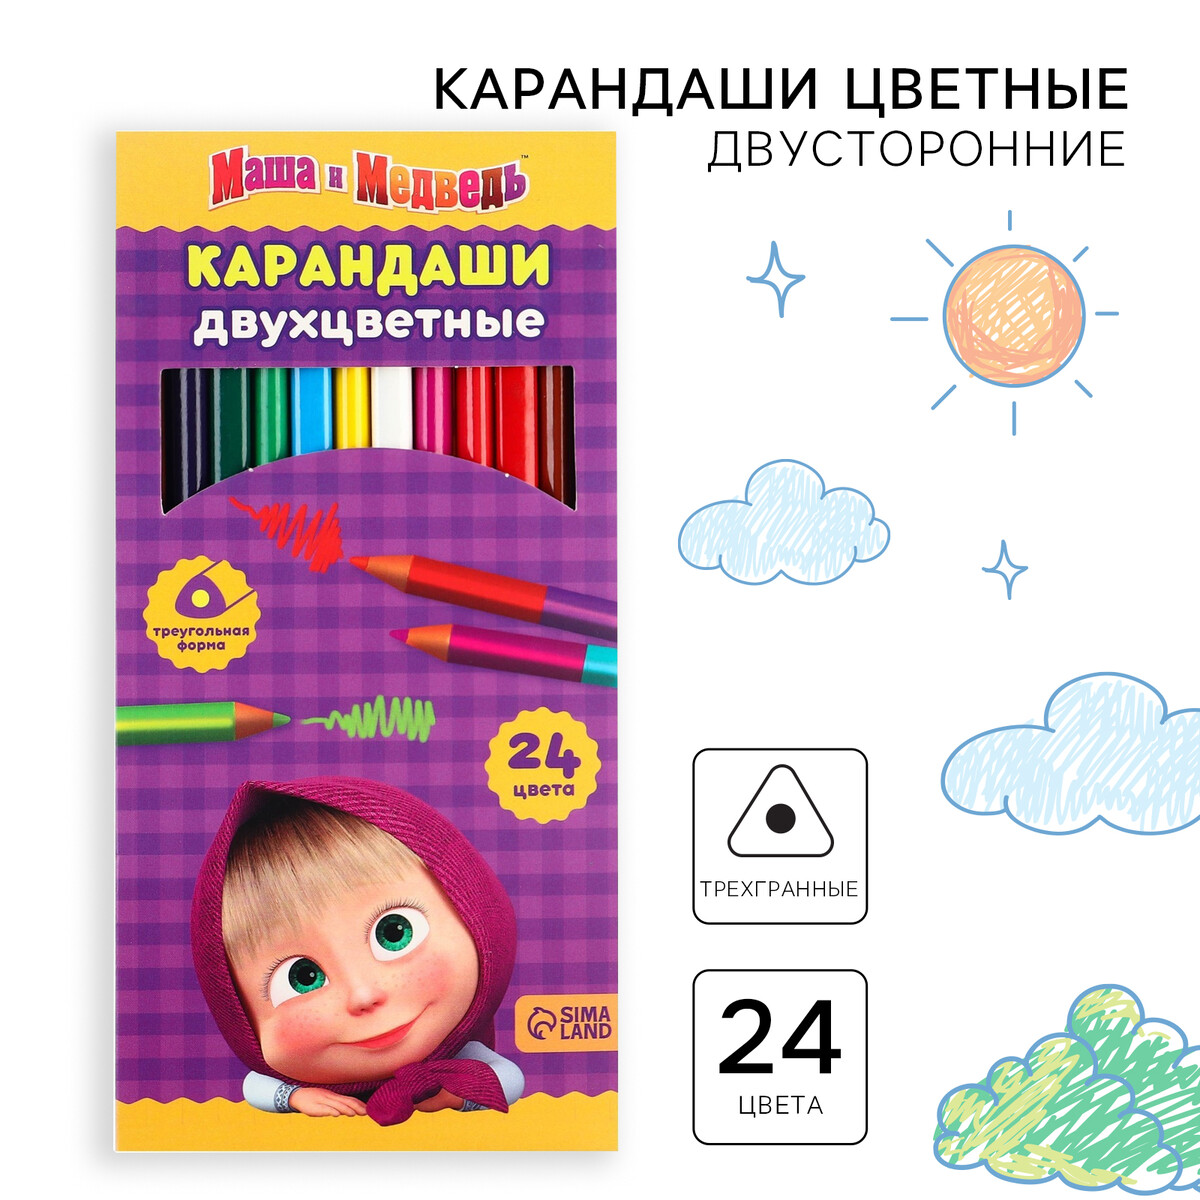 Цветные карандаши, 24 цвета, трехгранные, маша и медведь